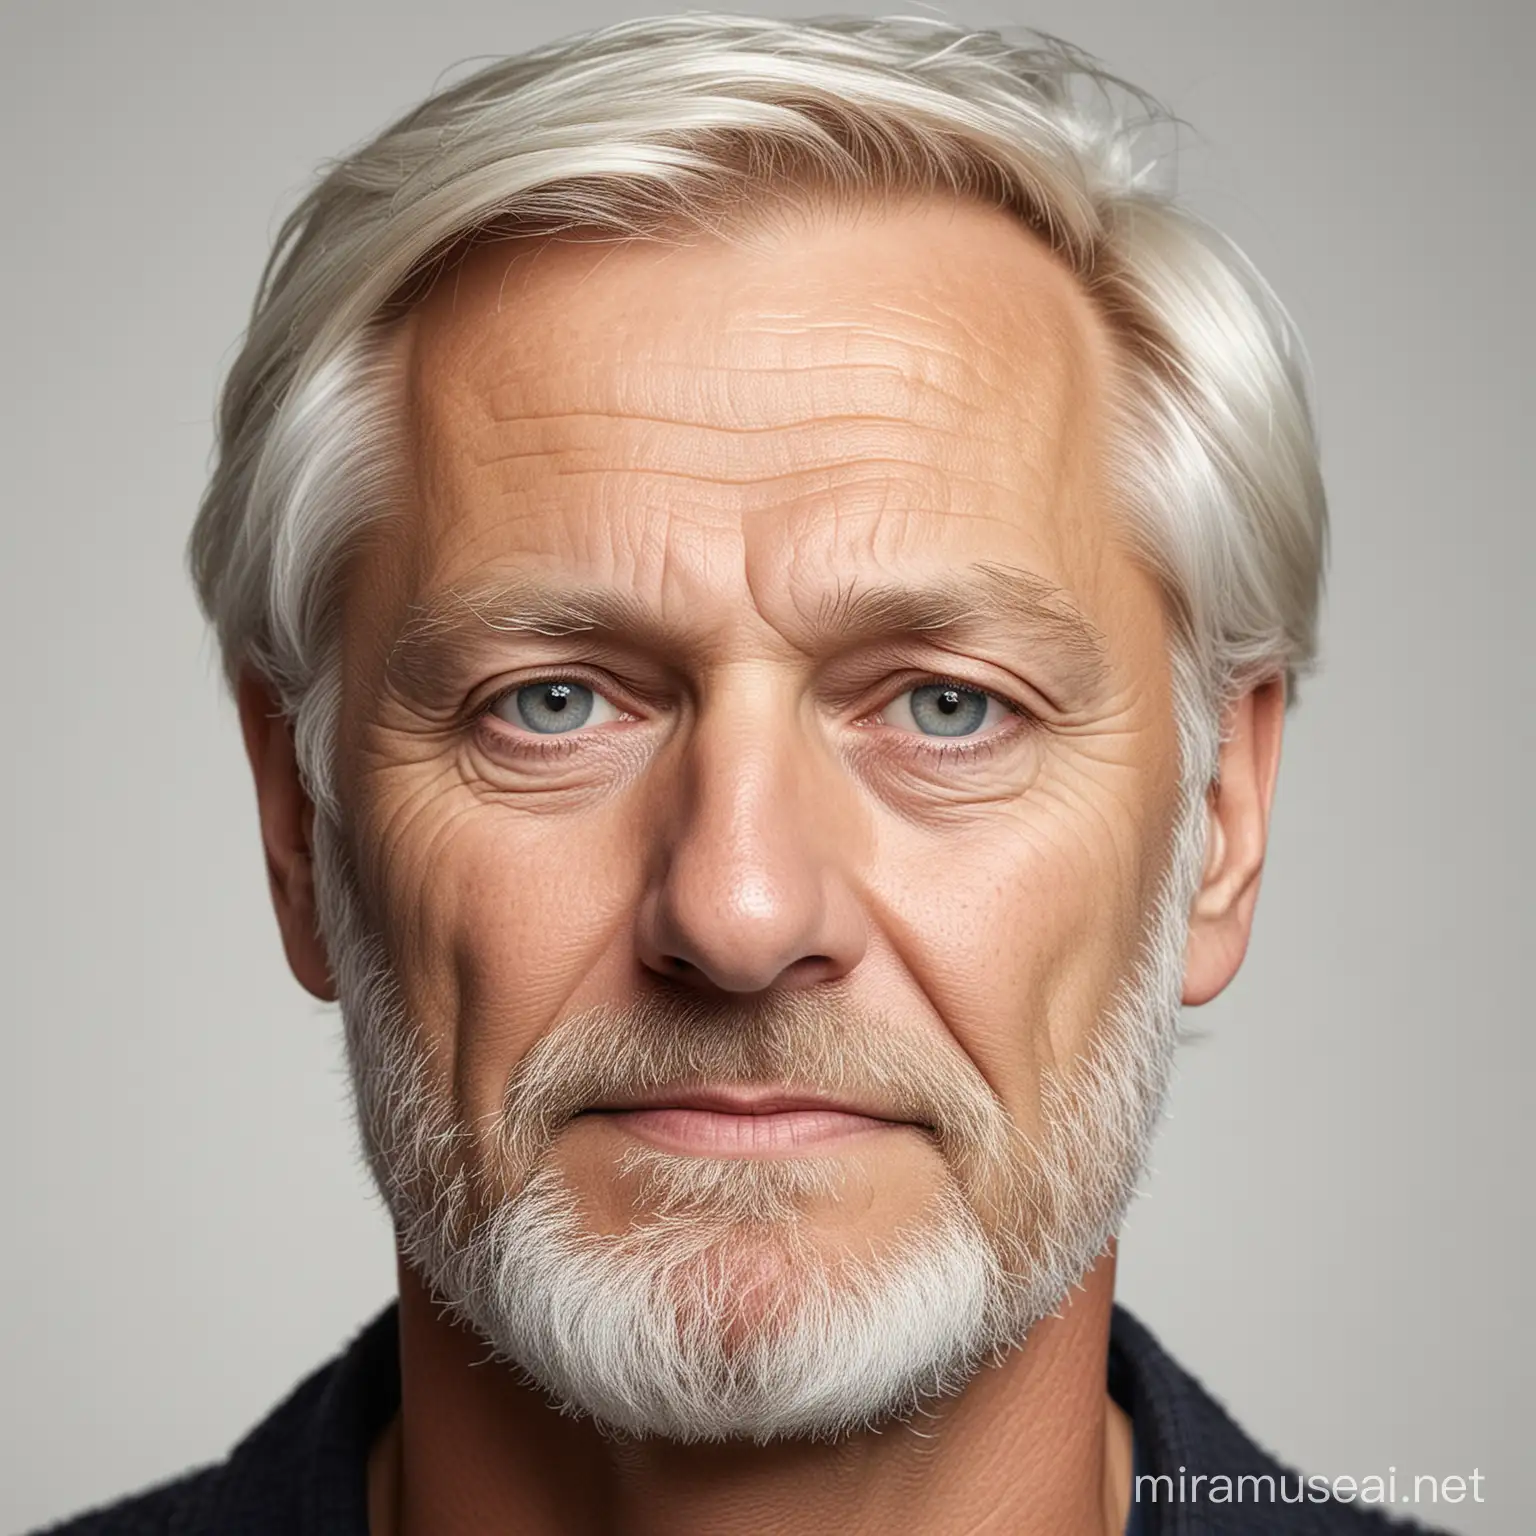 Gör en porträttbild av en 55-årig man. Svenskt utseende, ej blond. helvit bakgrund